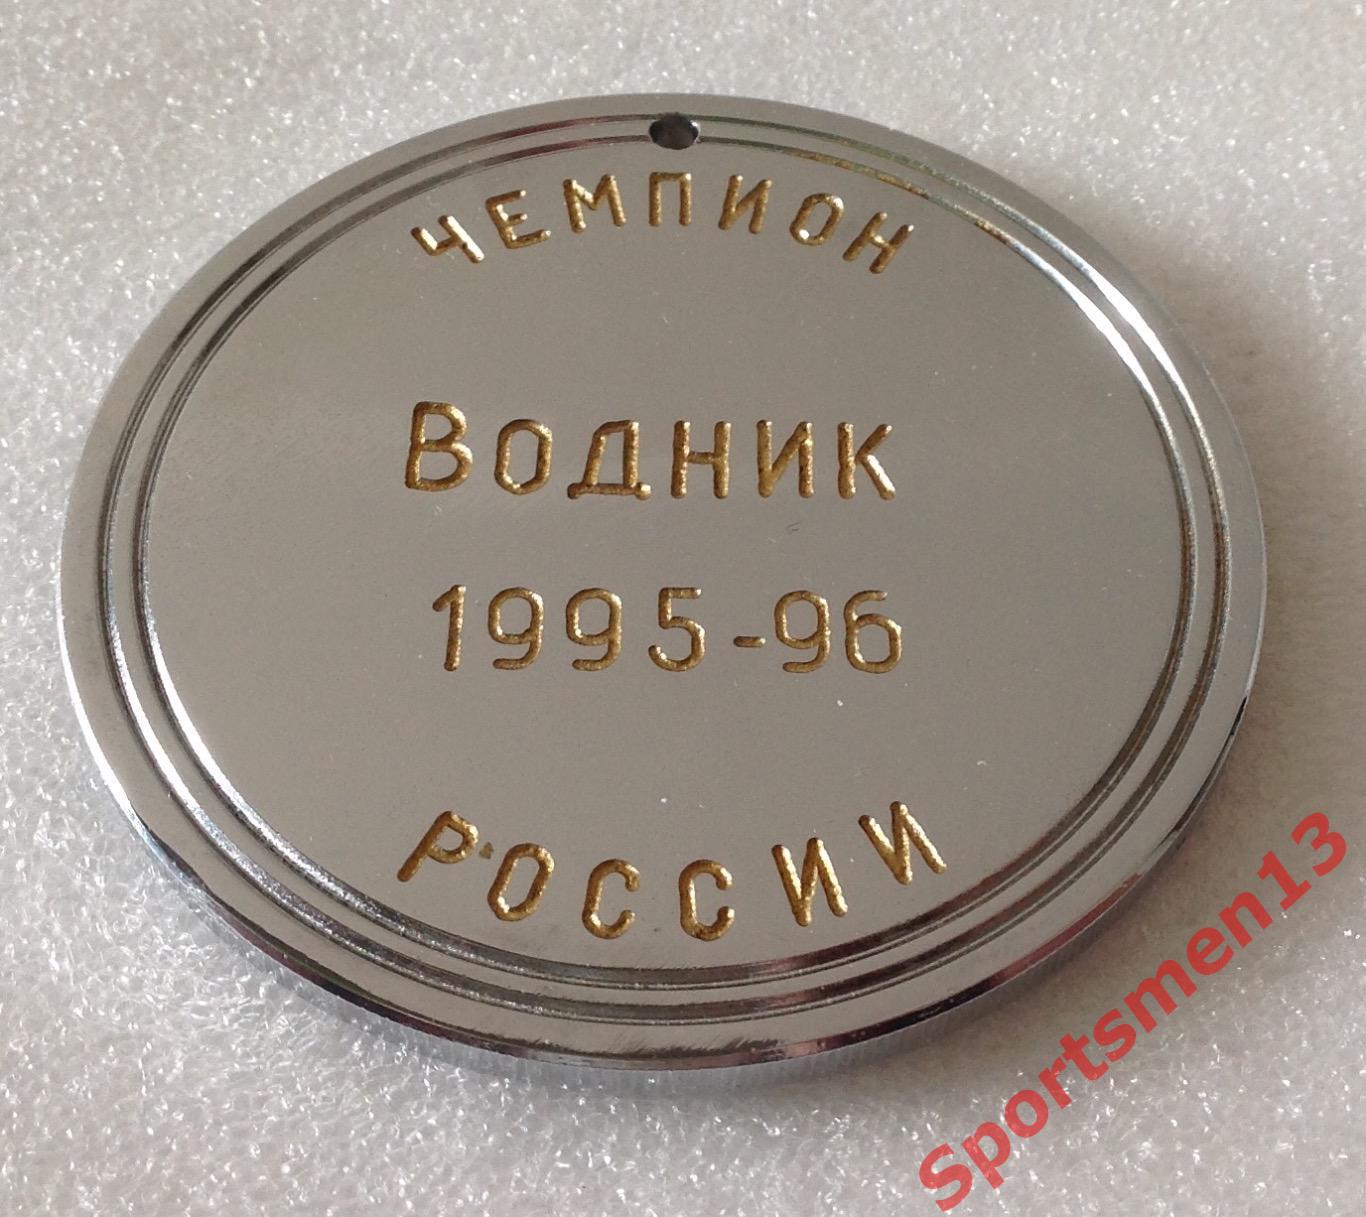 Хоккей с мячом. Медаль памятная. Водник Архангельск, 1996